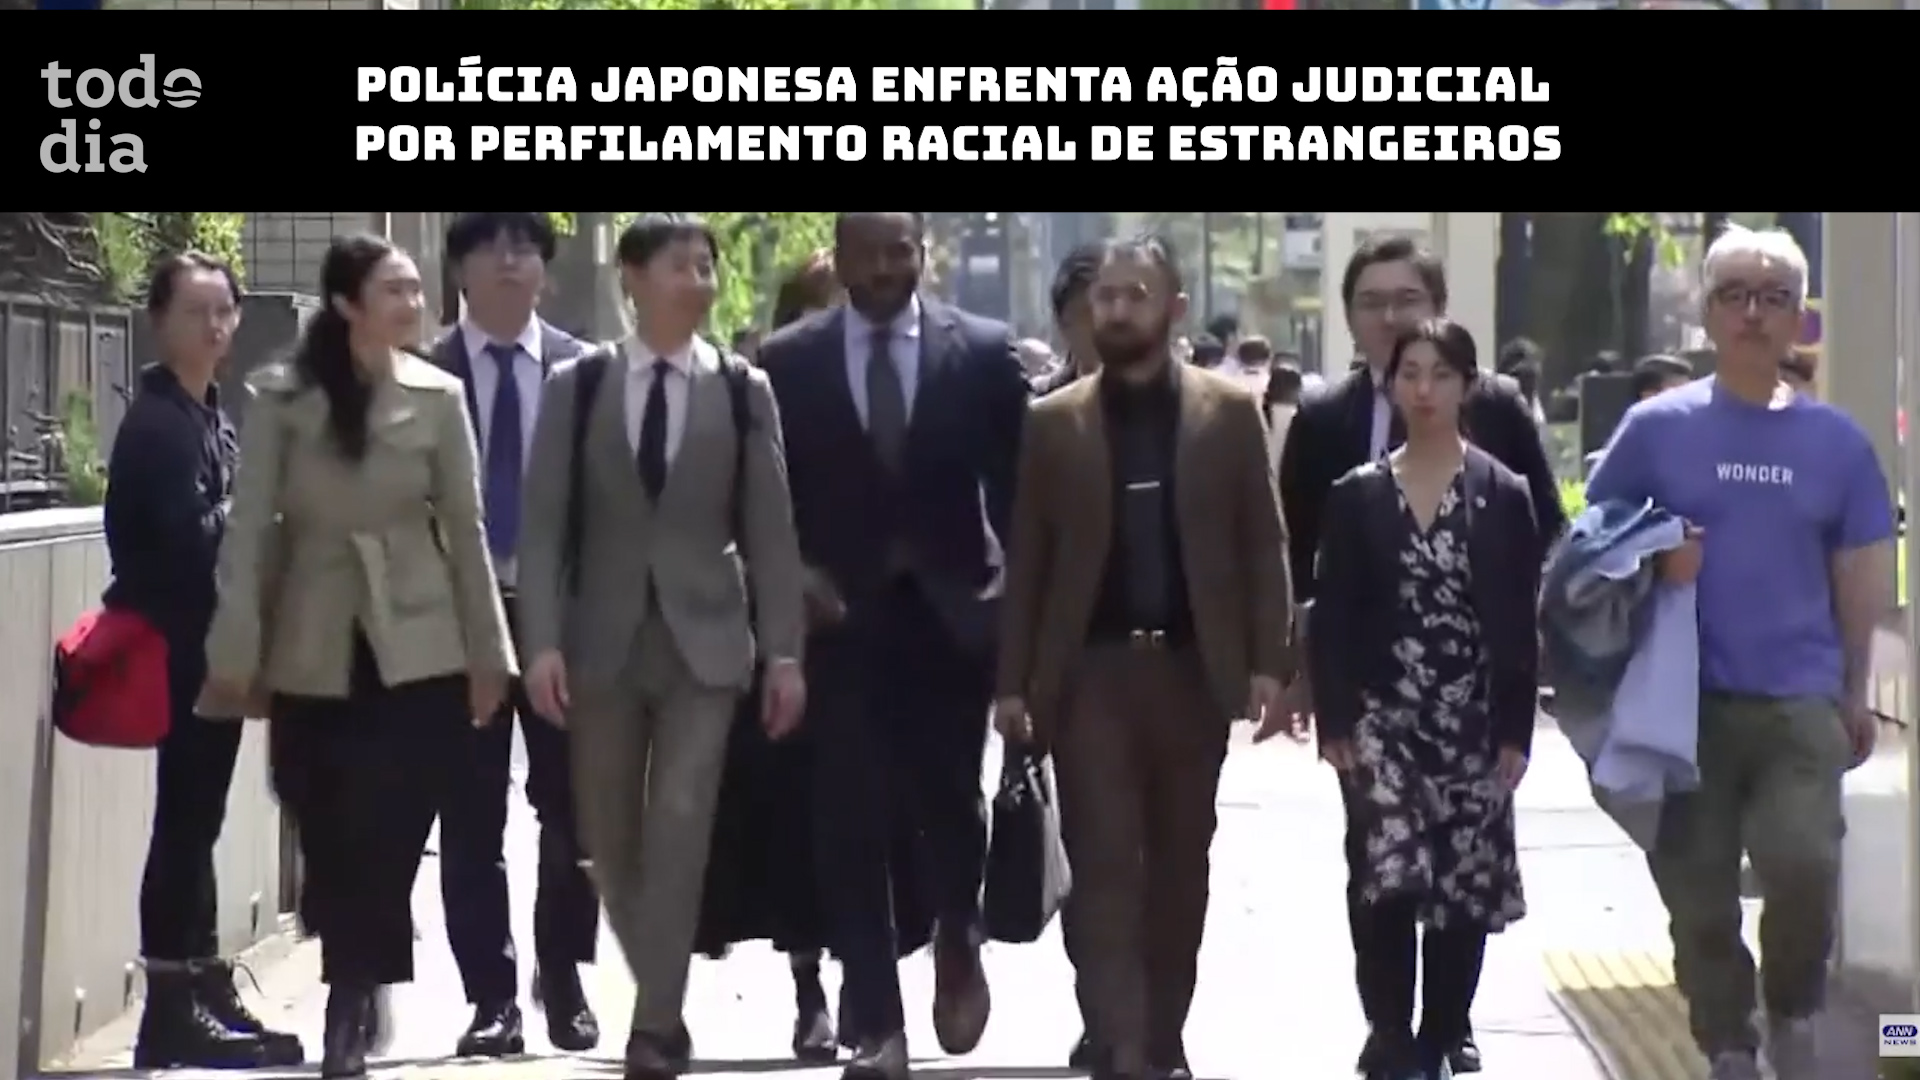 Polícia japonesa enfrenta ação judicial por perfilamento racial de estrangeiros